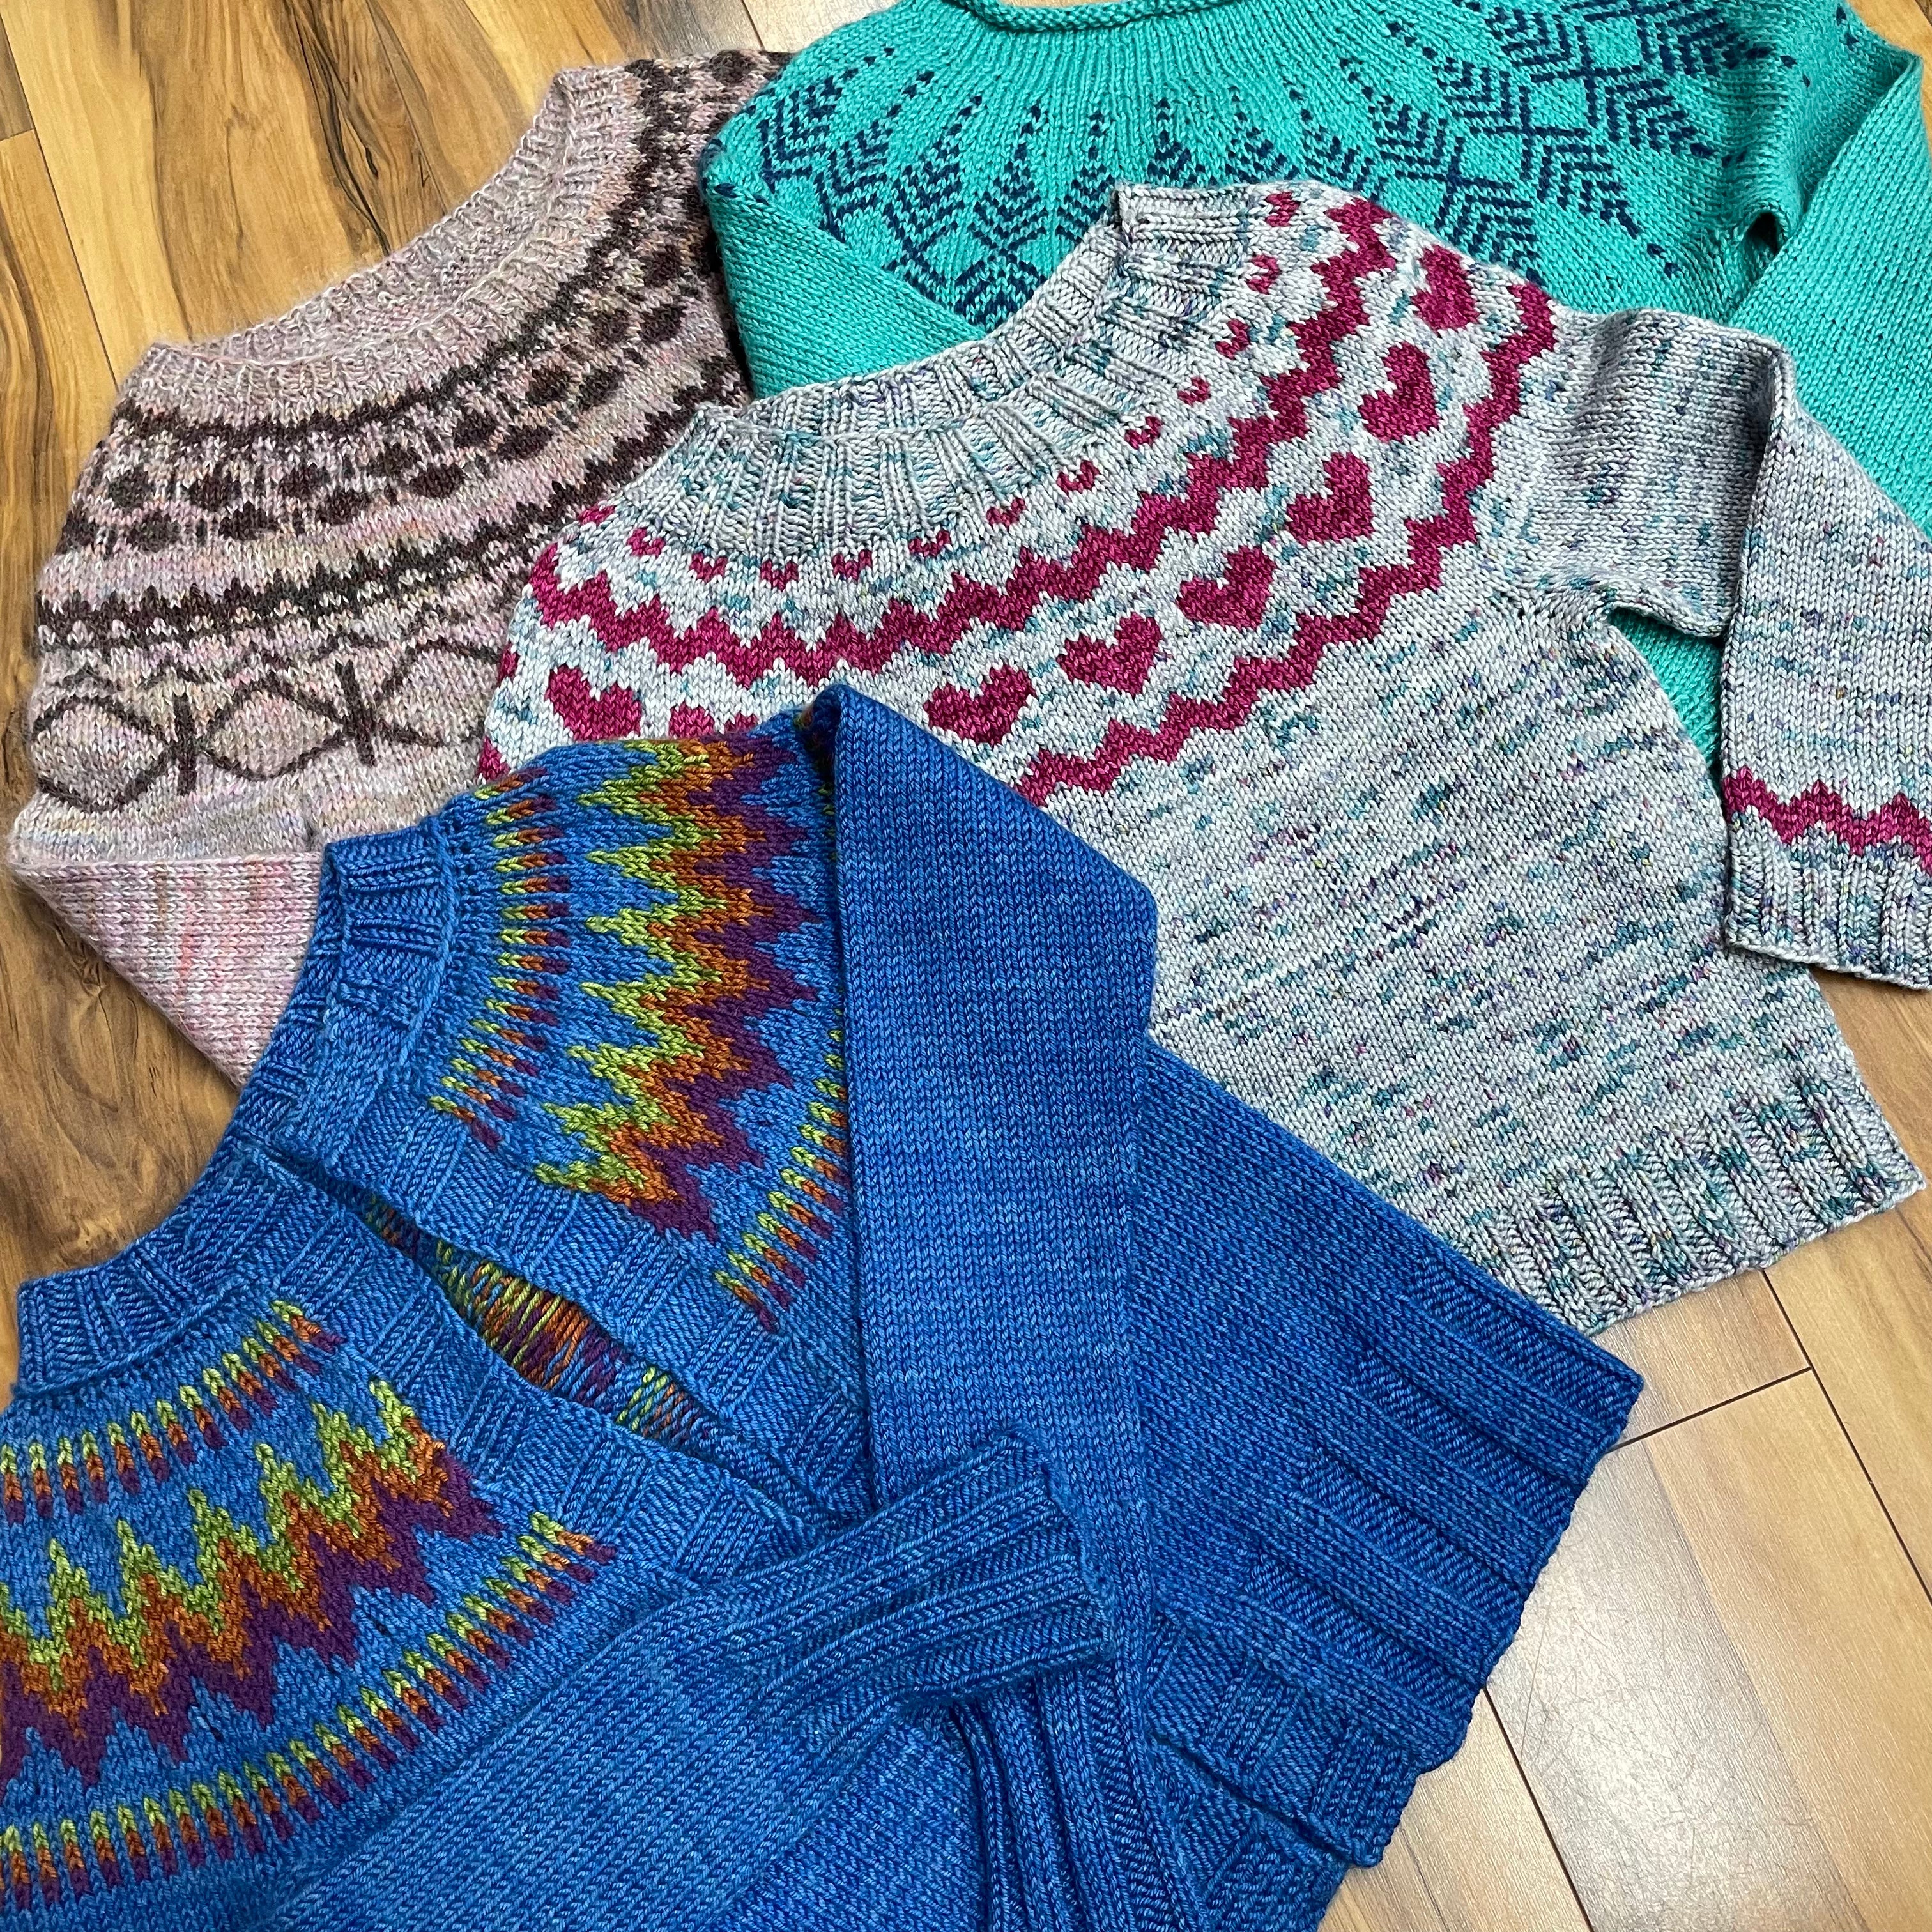 Filges Organic Knitting Kit for Kids